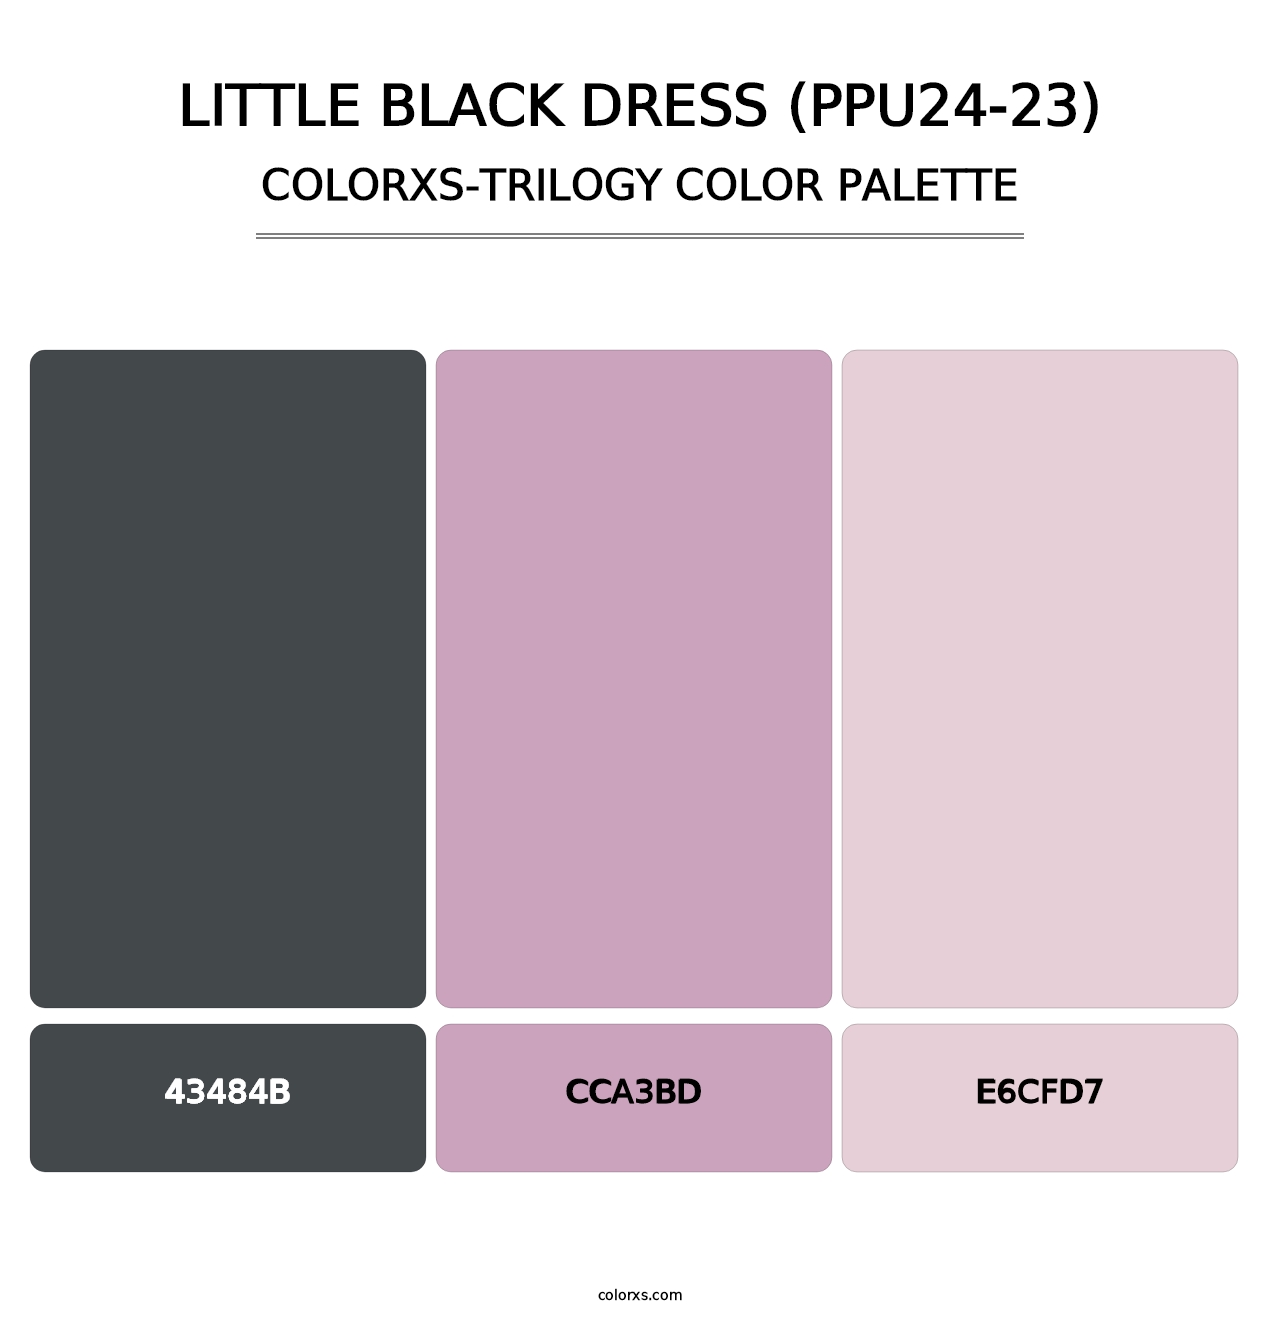 Little Black Dress (PPU24-23) - Colorxs Trilogy Palette